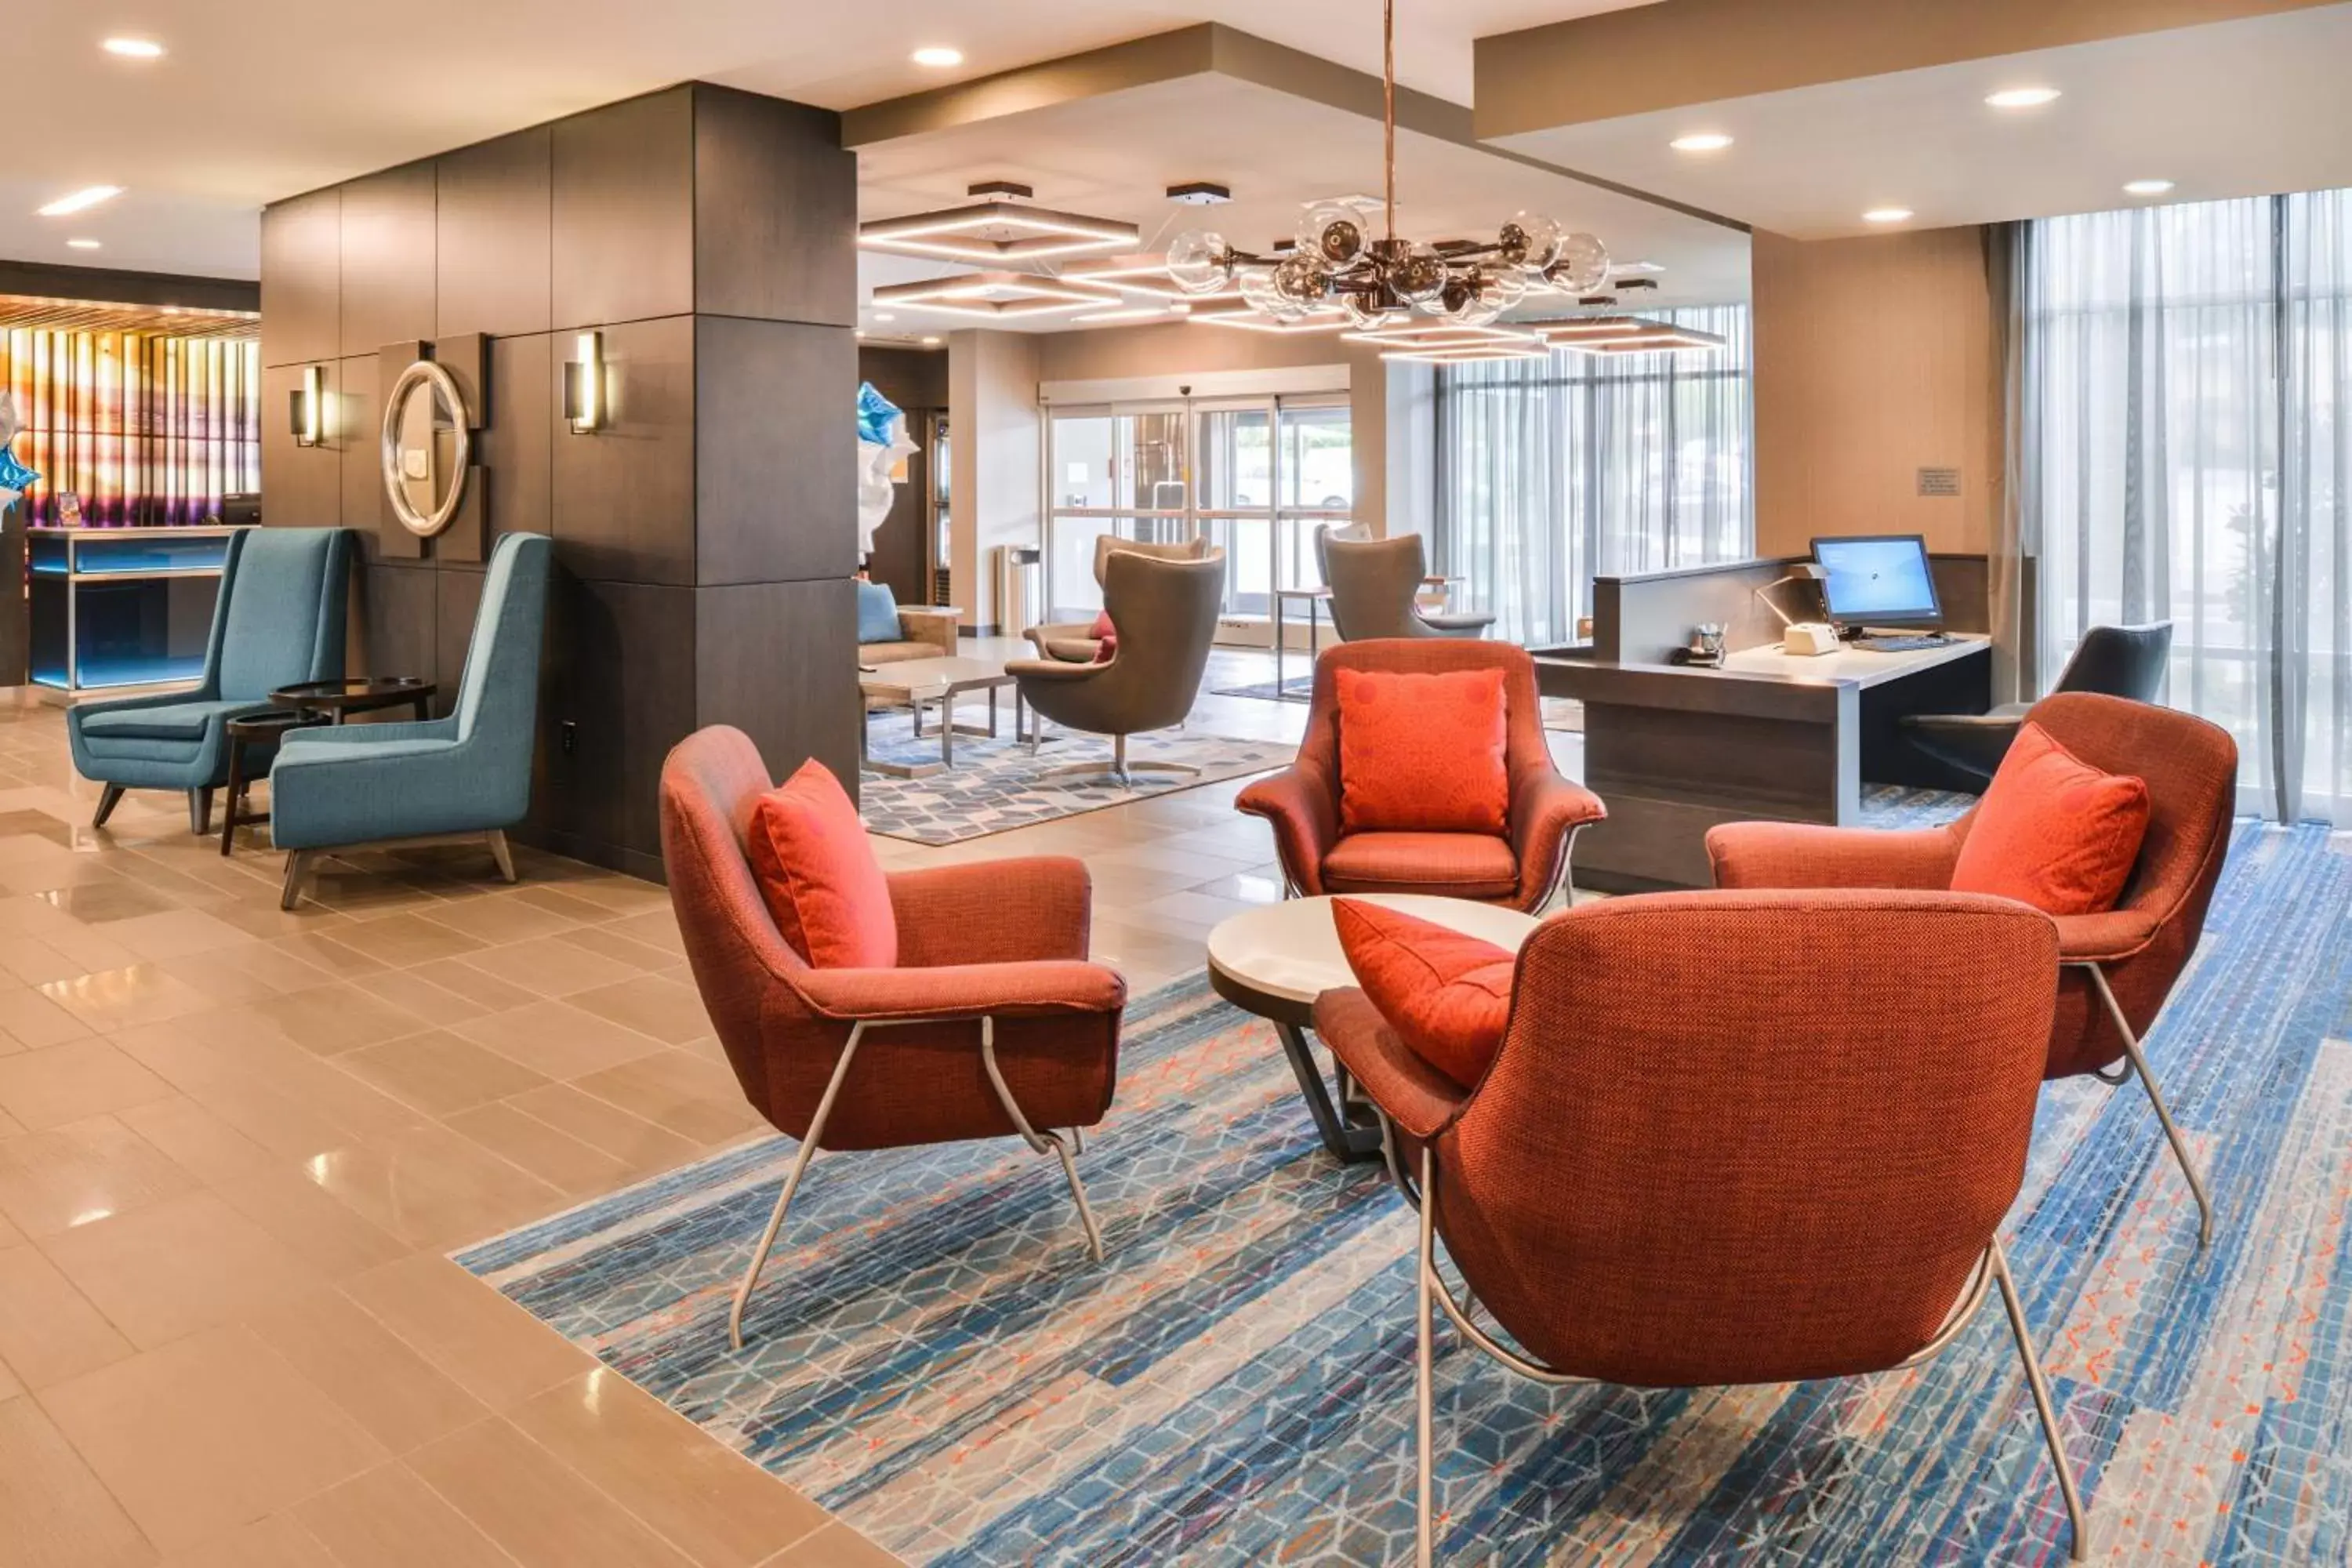 Lobby or reception, Lobby/Reception in Fairfield Inn & Suites by Marriott Raleigh Cary